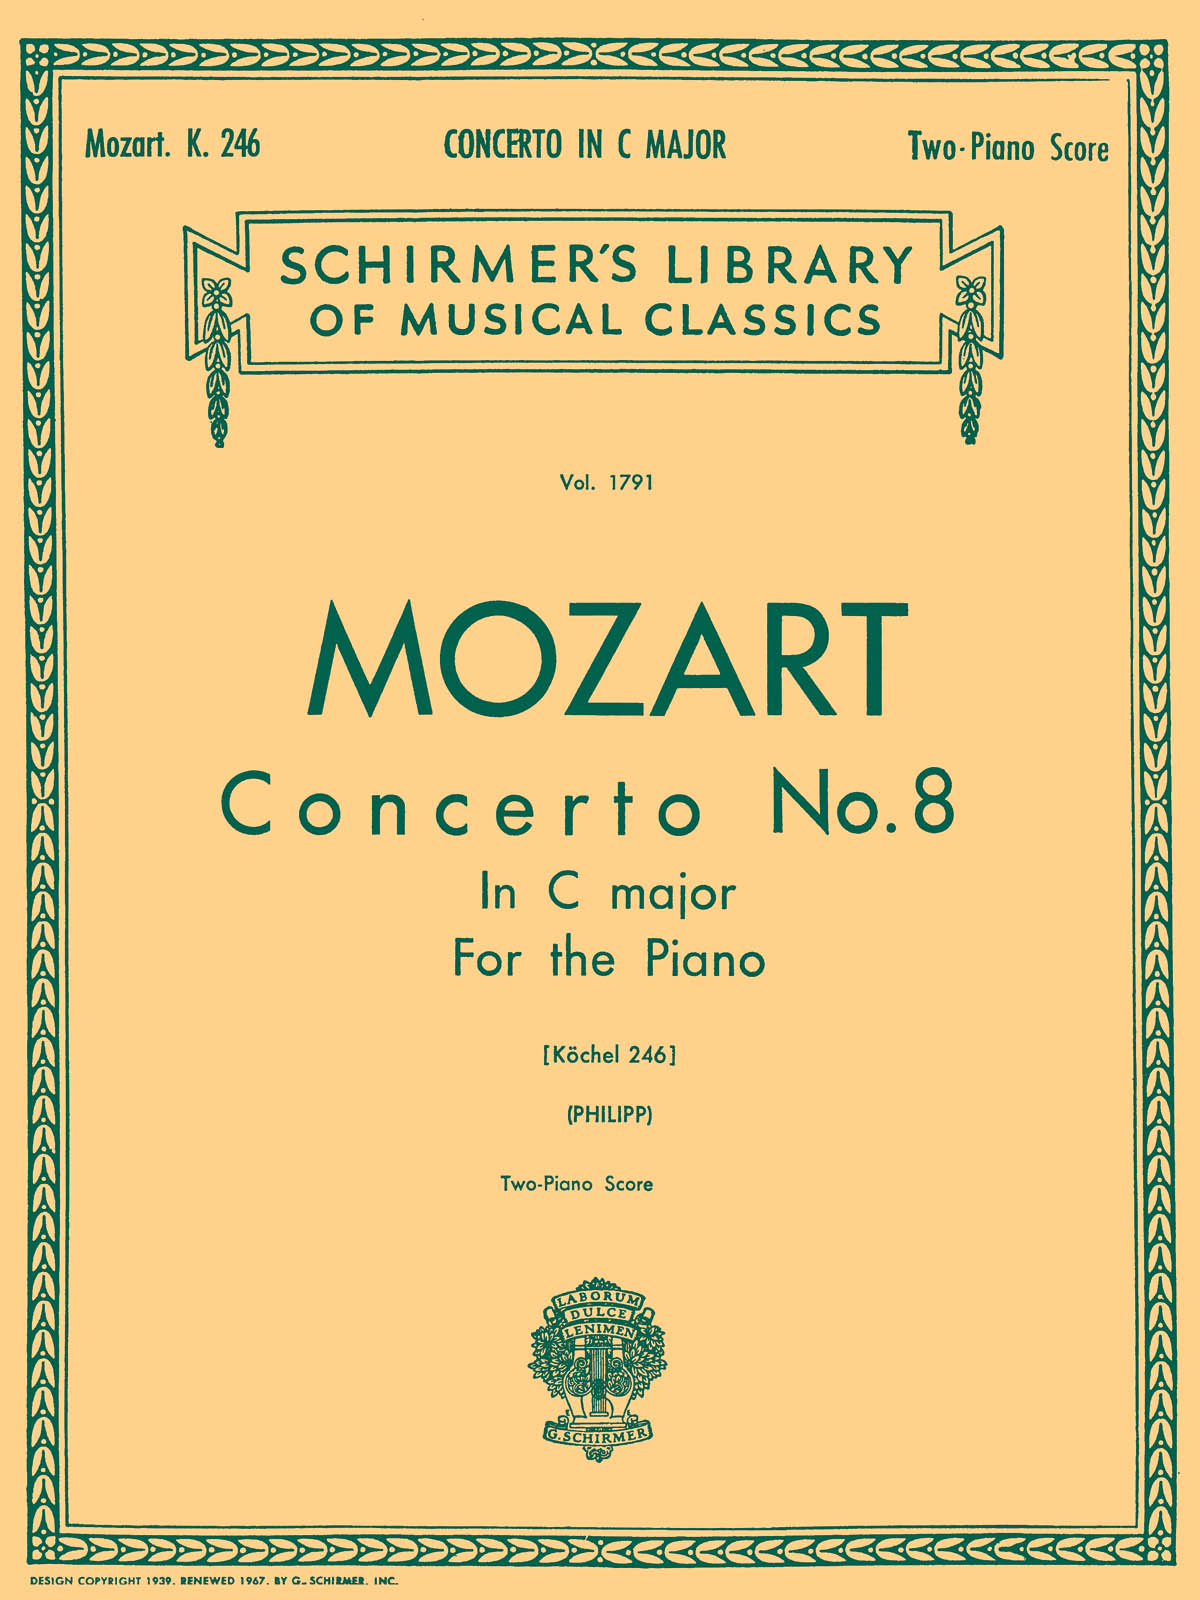 Mozart: Concerto No. 8 in C, K.246